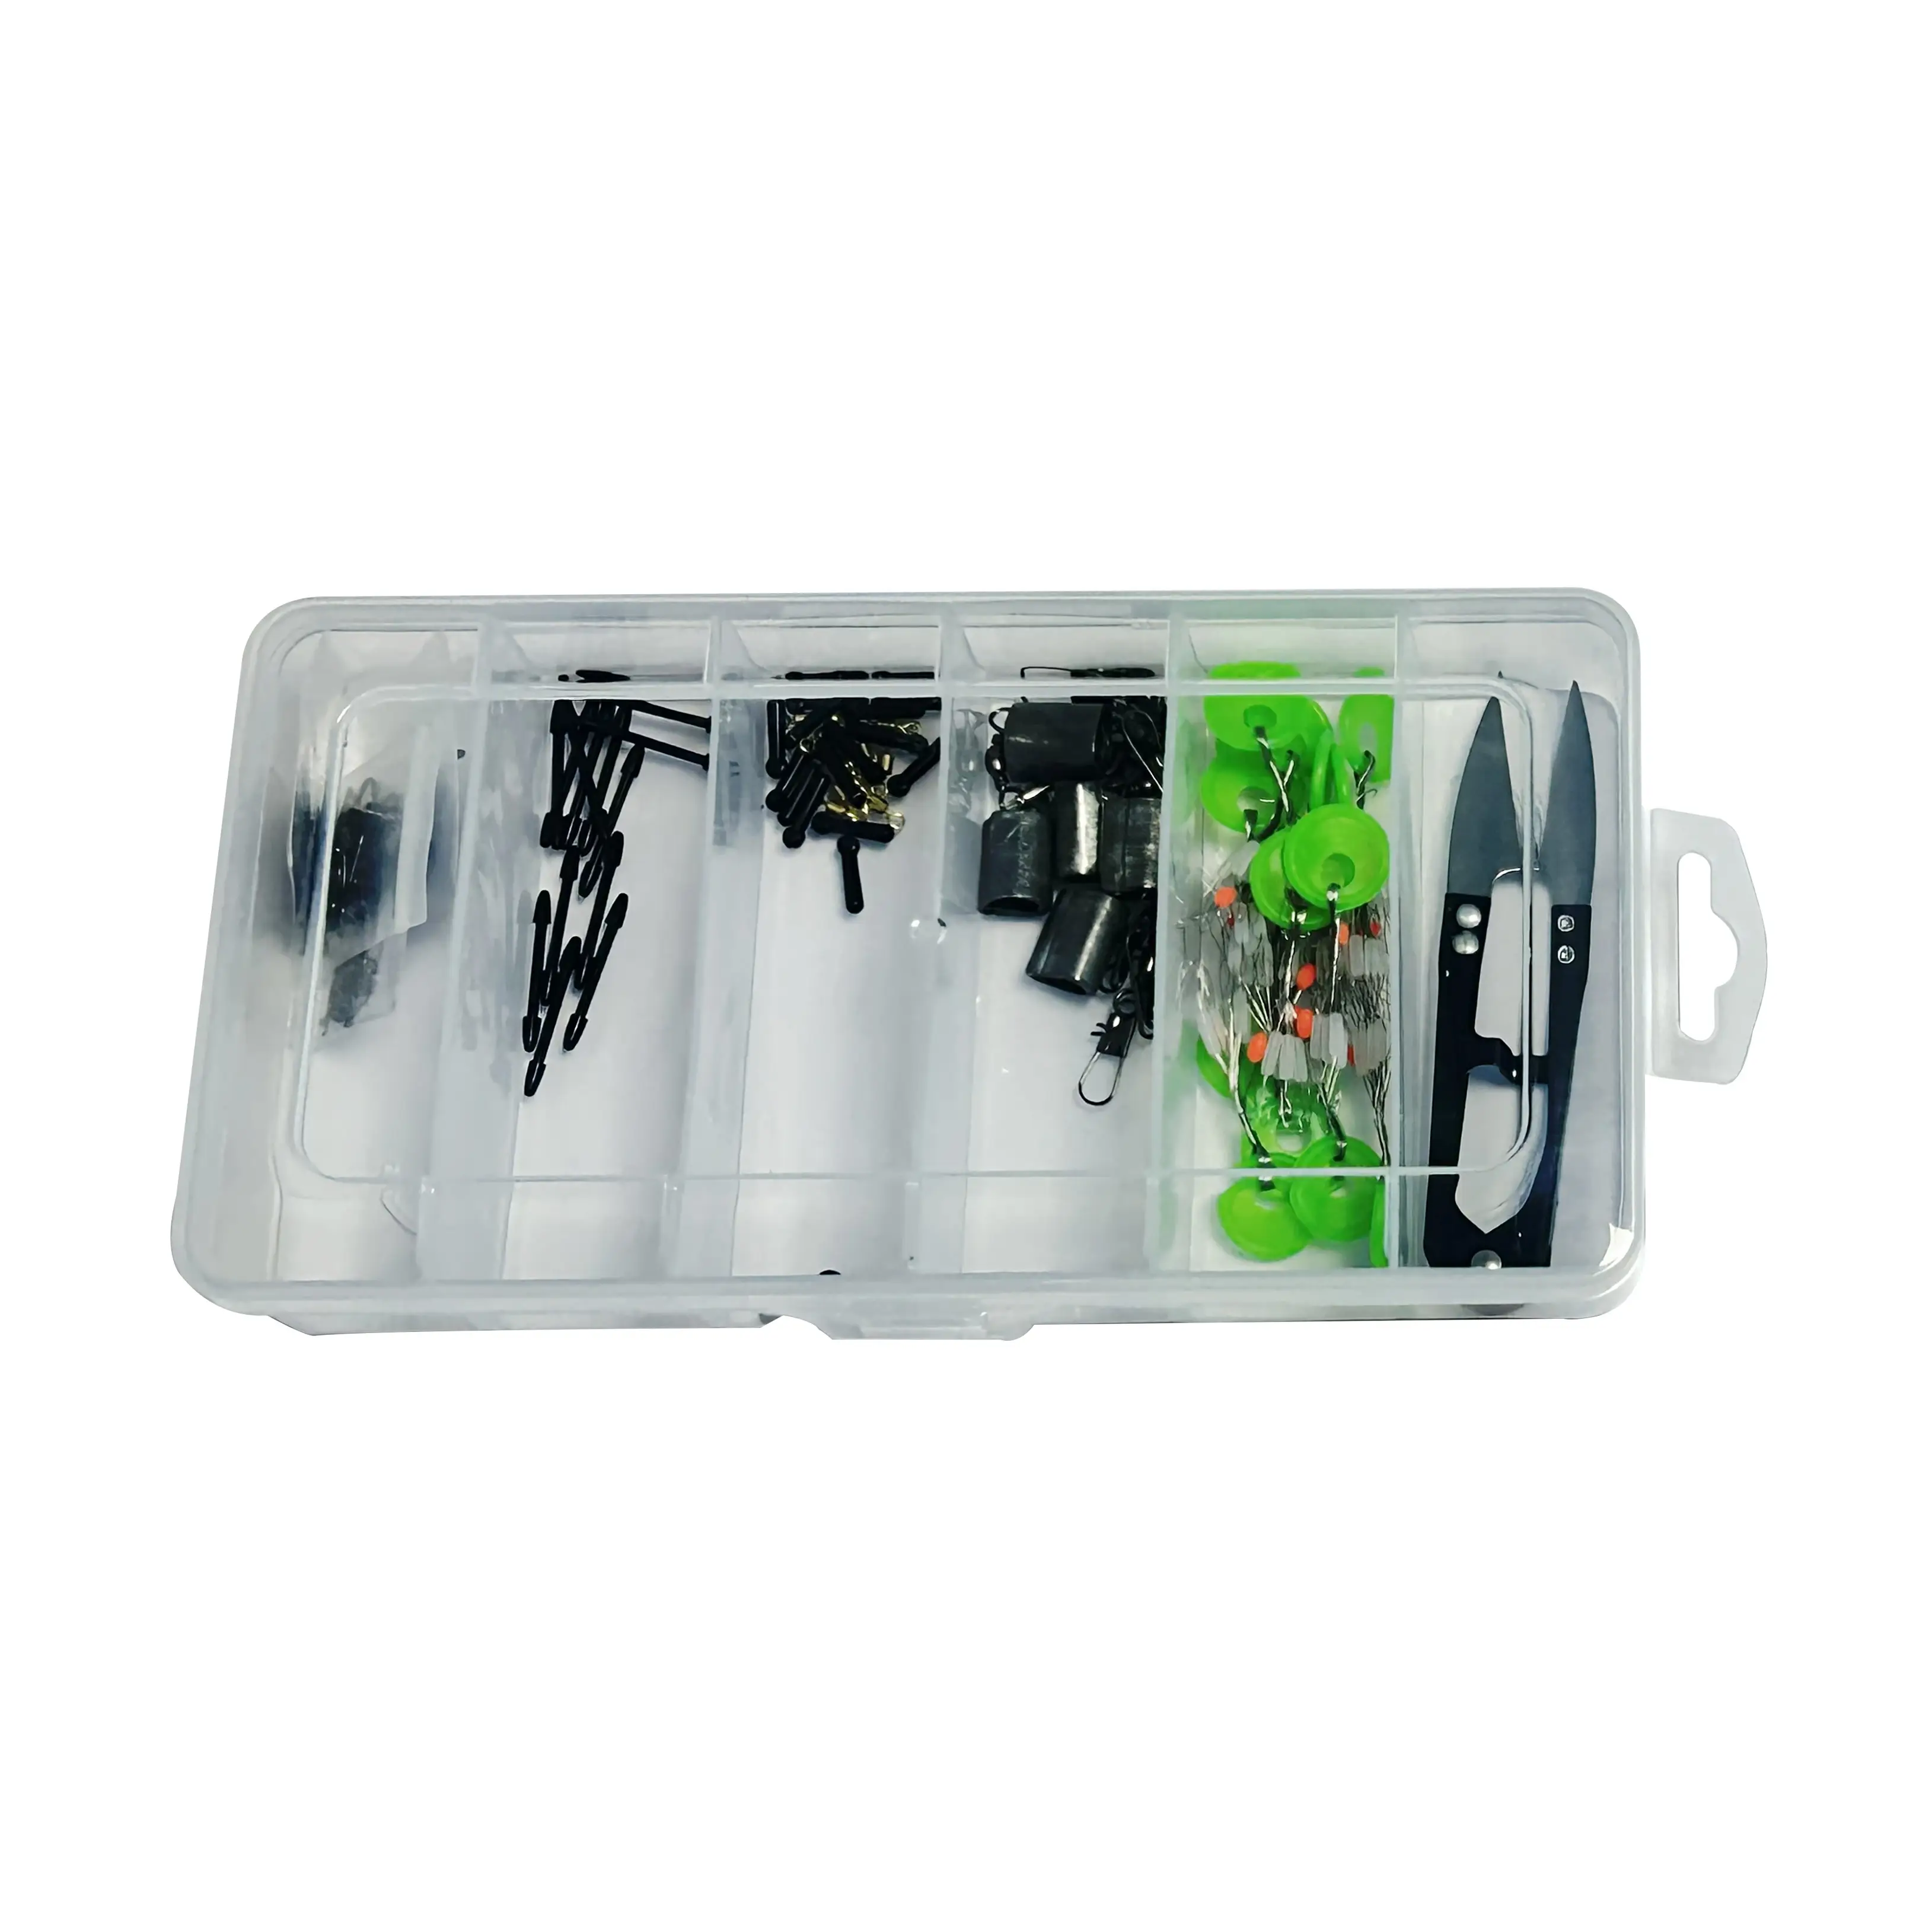 뜨거운 낚시 장비 낚시 액세서리 리드 홀더 플로트 루아 박스 미끼 도구 10 셀 15 셀 투명 플라스틱 보관 상자